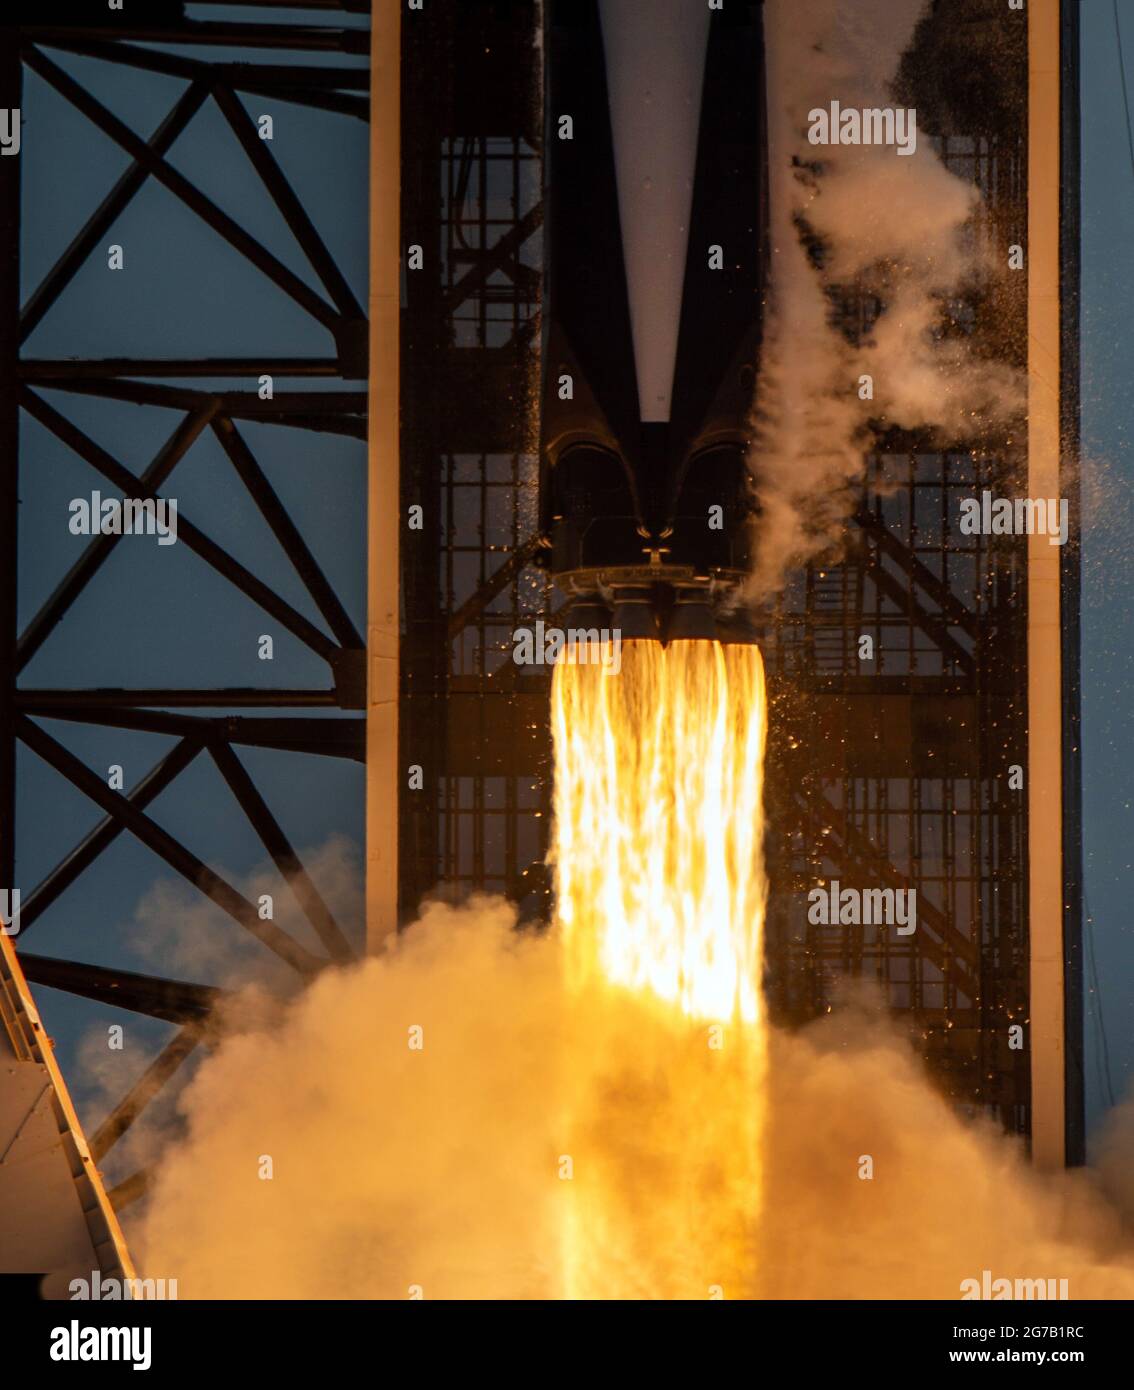 Un razzo SpaceX Falcon 9 che trasporta la navicella spaziale Crew Dragon dell'azienda viene lanciato nella missione SpaceX Demo-2 della NASA verso la Stazione spaziale Internazionale. 30 maggio 2020, Kennedy Space Center, Florida. La missione Demo-2 è il primo lancio con astronauti della navicella spaziale SpaceX Crew Dragon e Falcon 9 alla Stazione spaziale Internazionale come parte del Commercial Crew Program dell'agenzia. Una versione unica, ottimizzata e digitalmente migliorata di un'immagine della NASA di J Kowsky/ Credit NASA Foto Stock